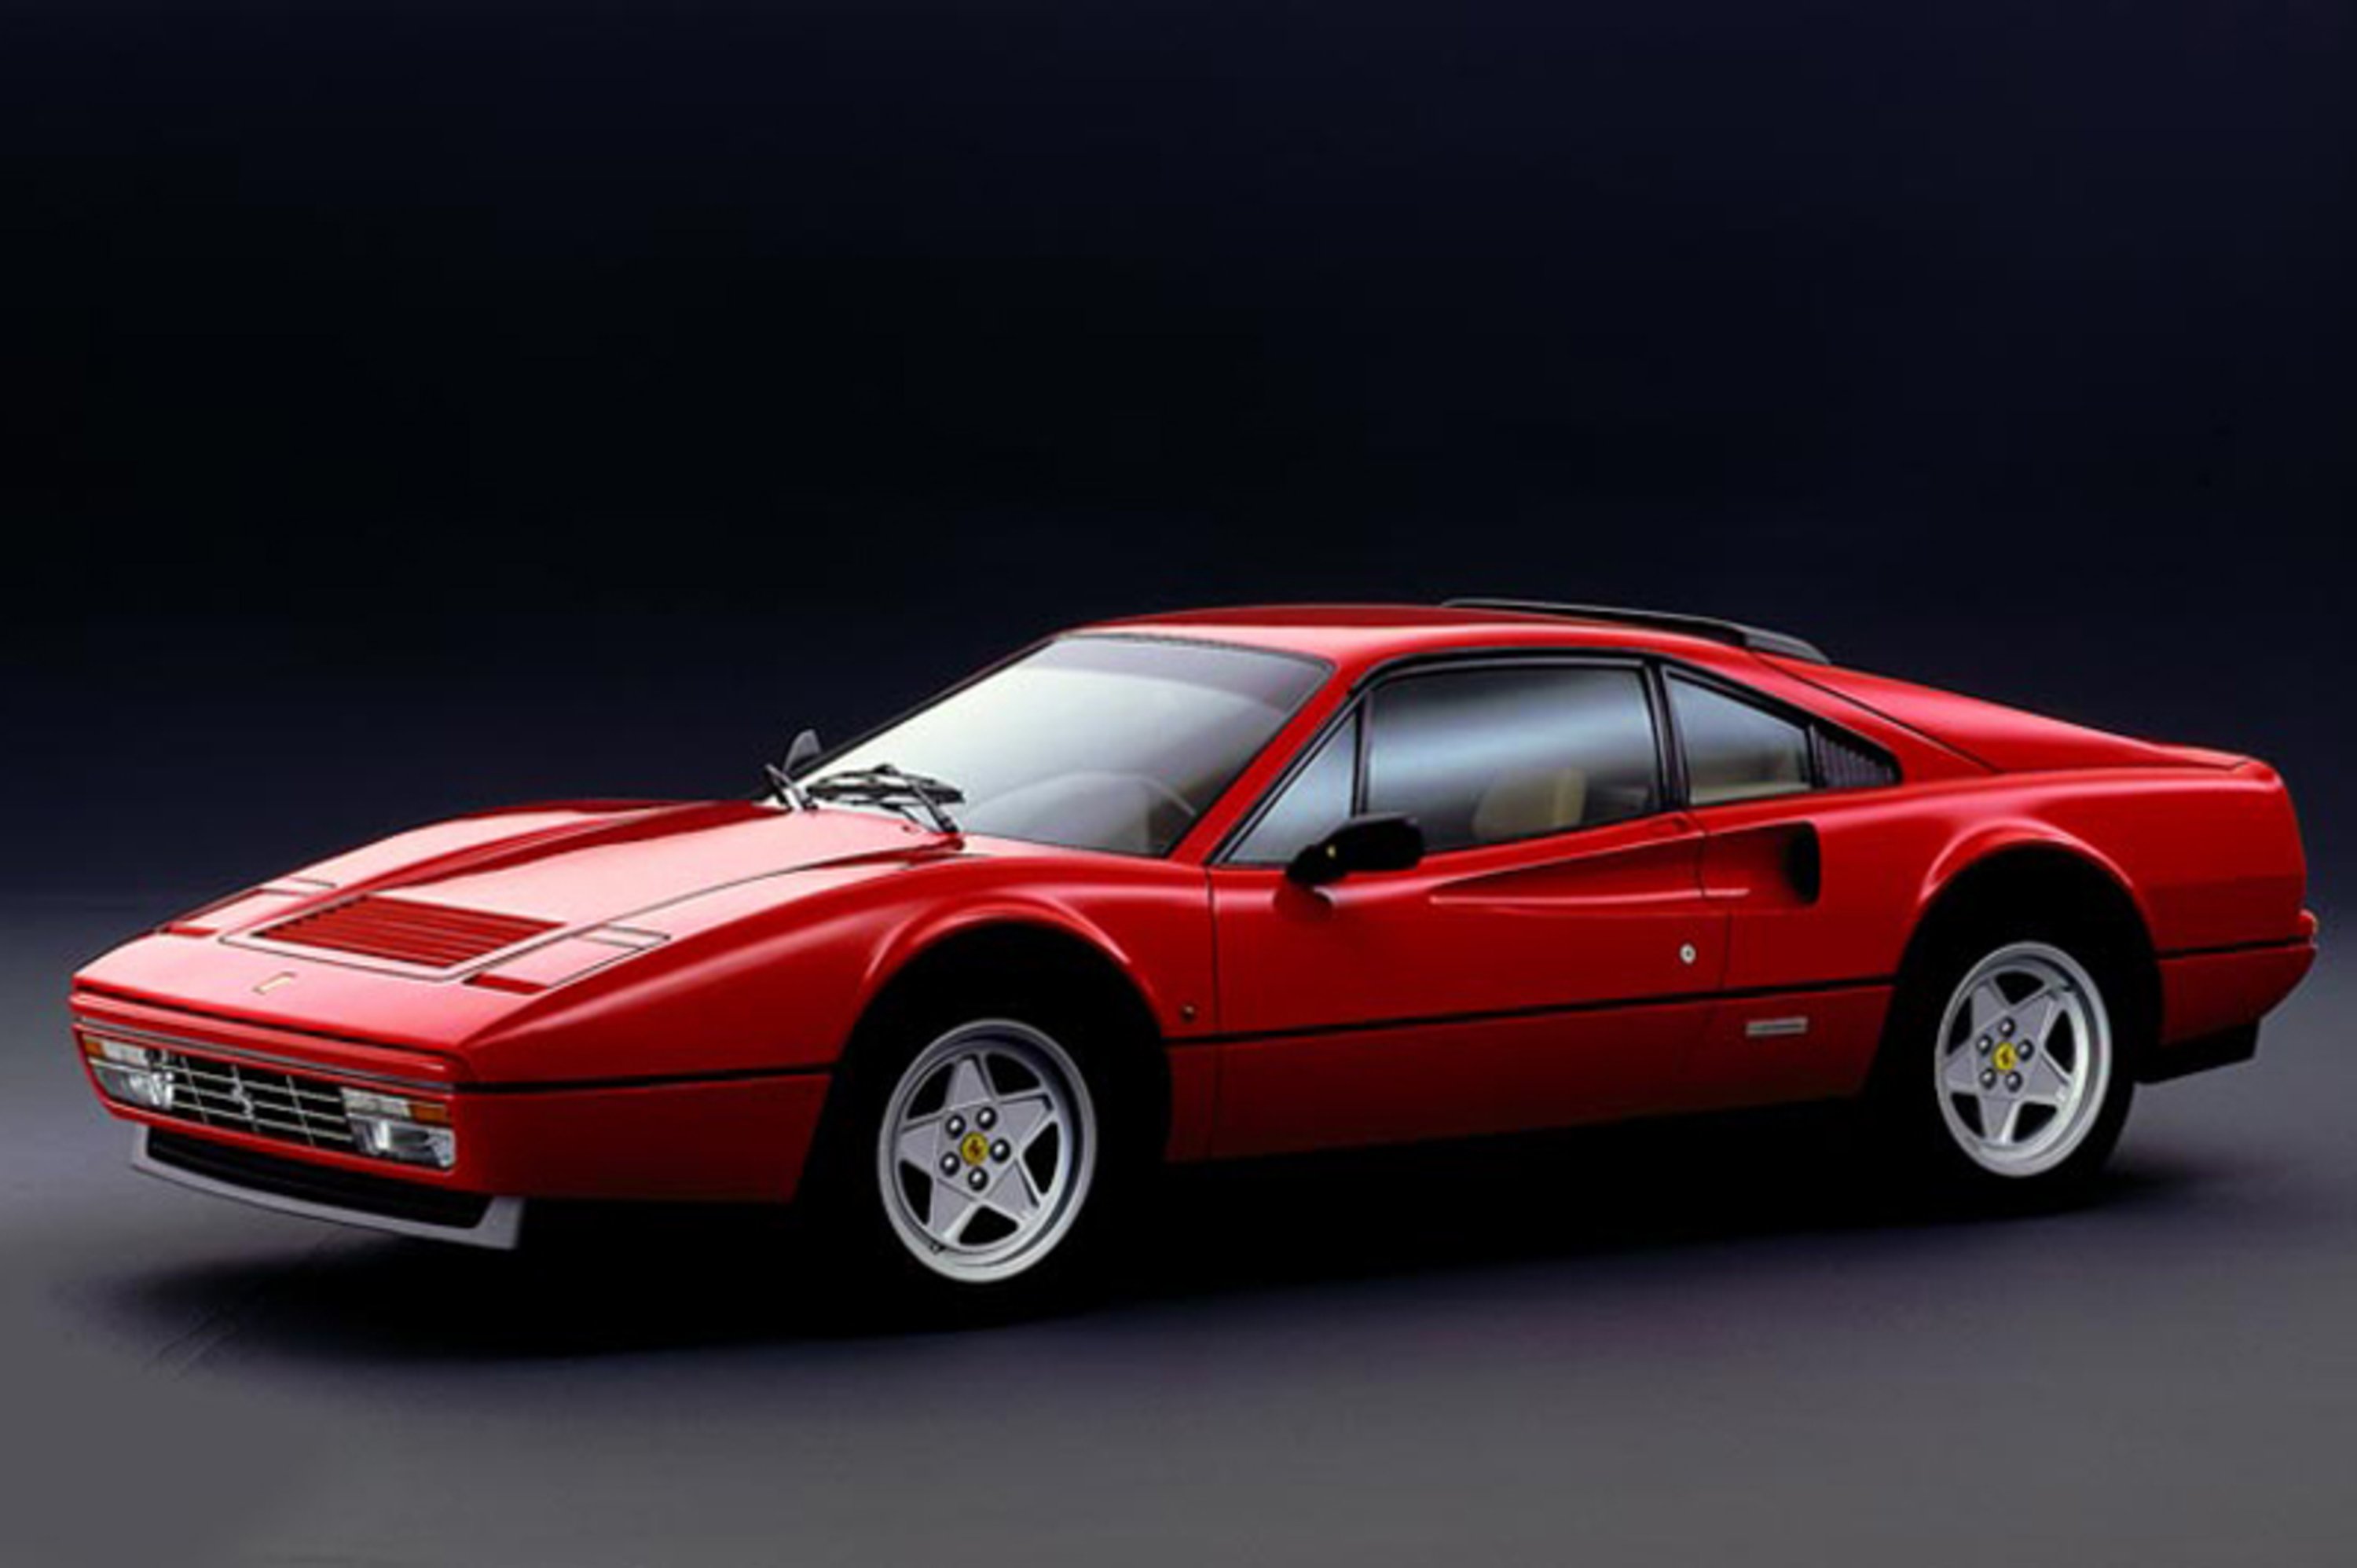 Ferrari 328 (1985-89)